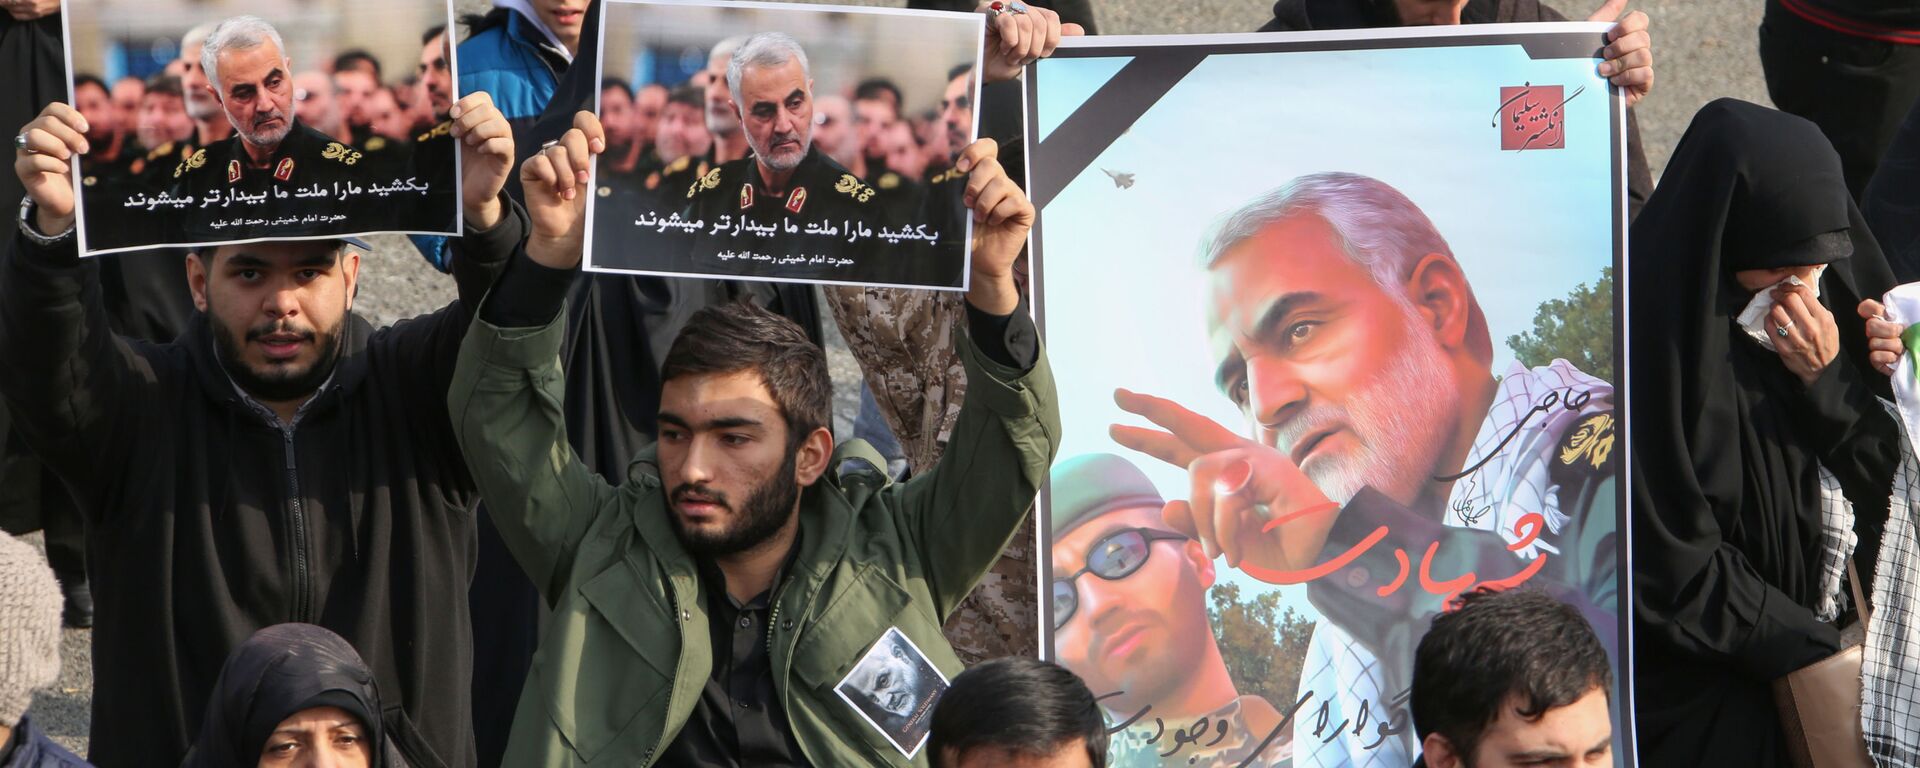 Люди с плакатами с изображением генерала Сулеймани во время демонстрации в Тегеране, Иран, 2020 год - Sputnik Mundo, 1920, 13.01.2022